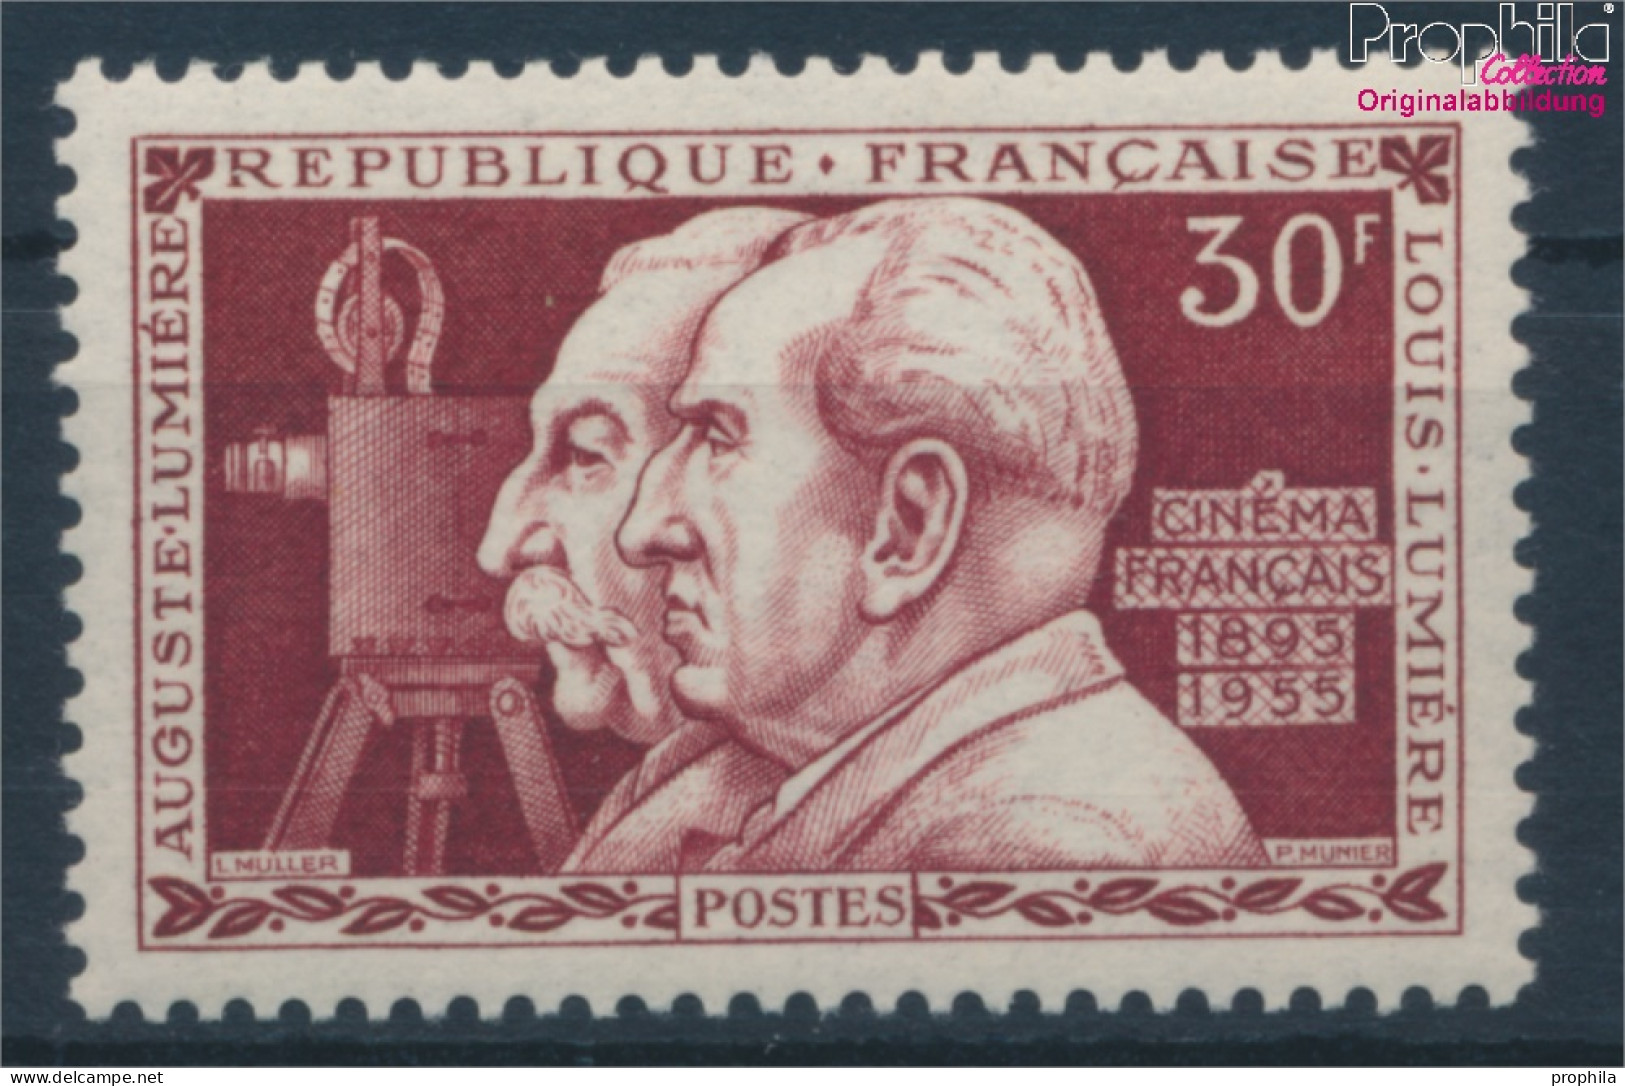 Frankreich 1059 (kompl.Ausg.) Postfrisch 1955 Brüder Lumière (10387606 - Nuovi